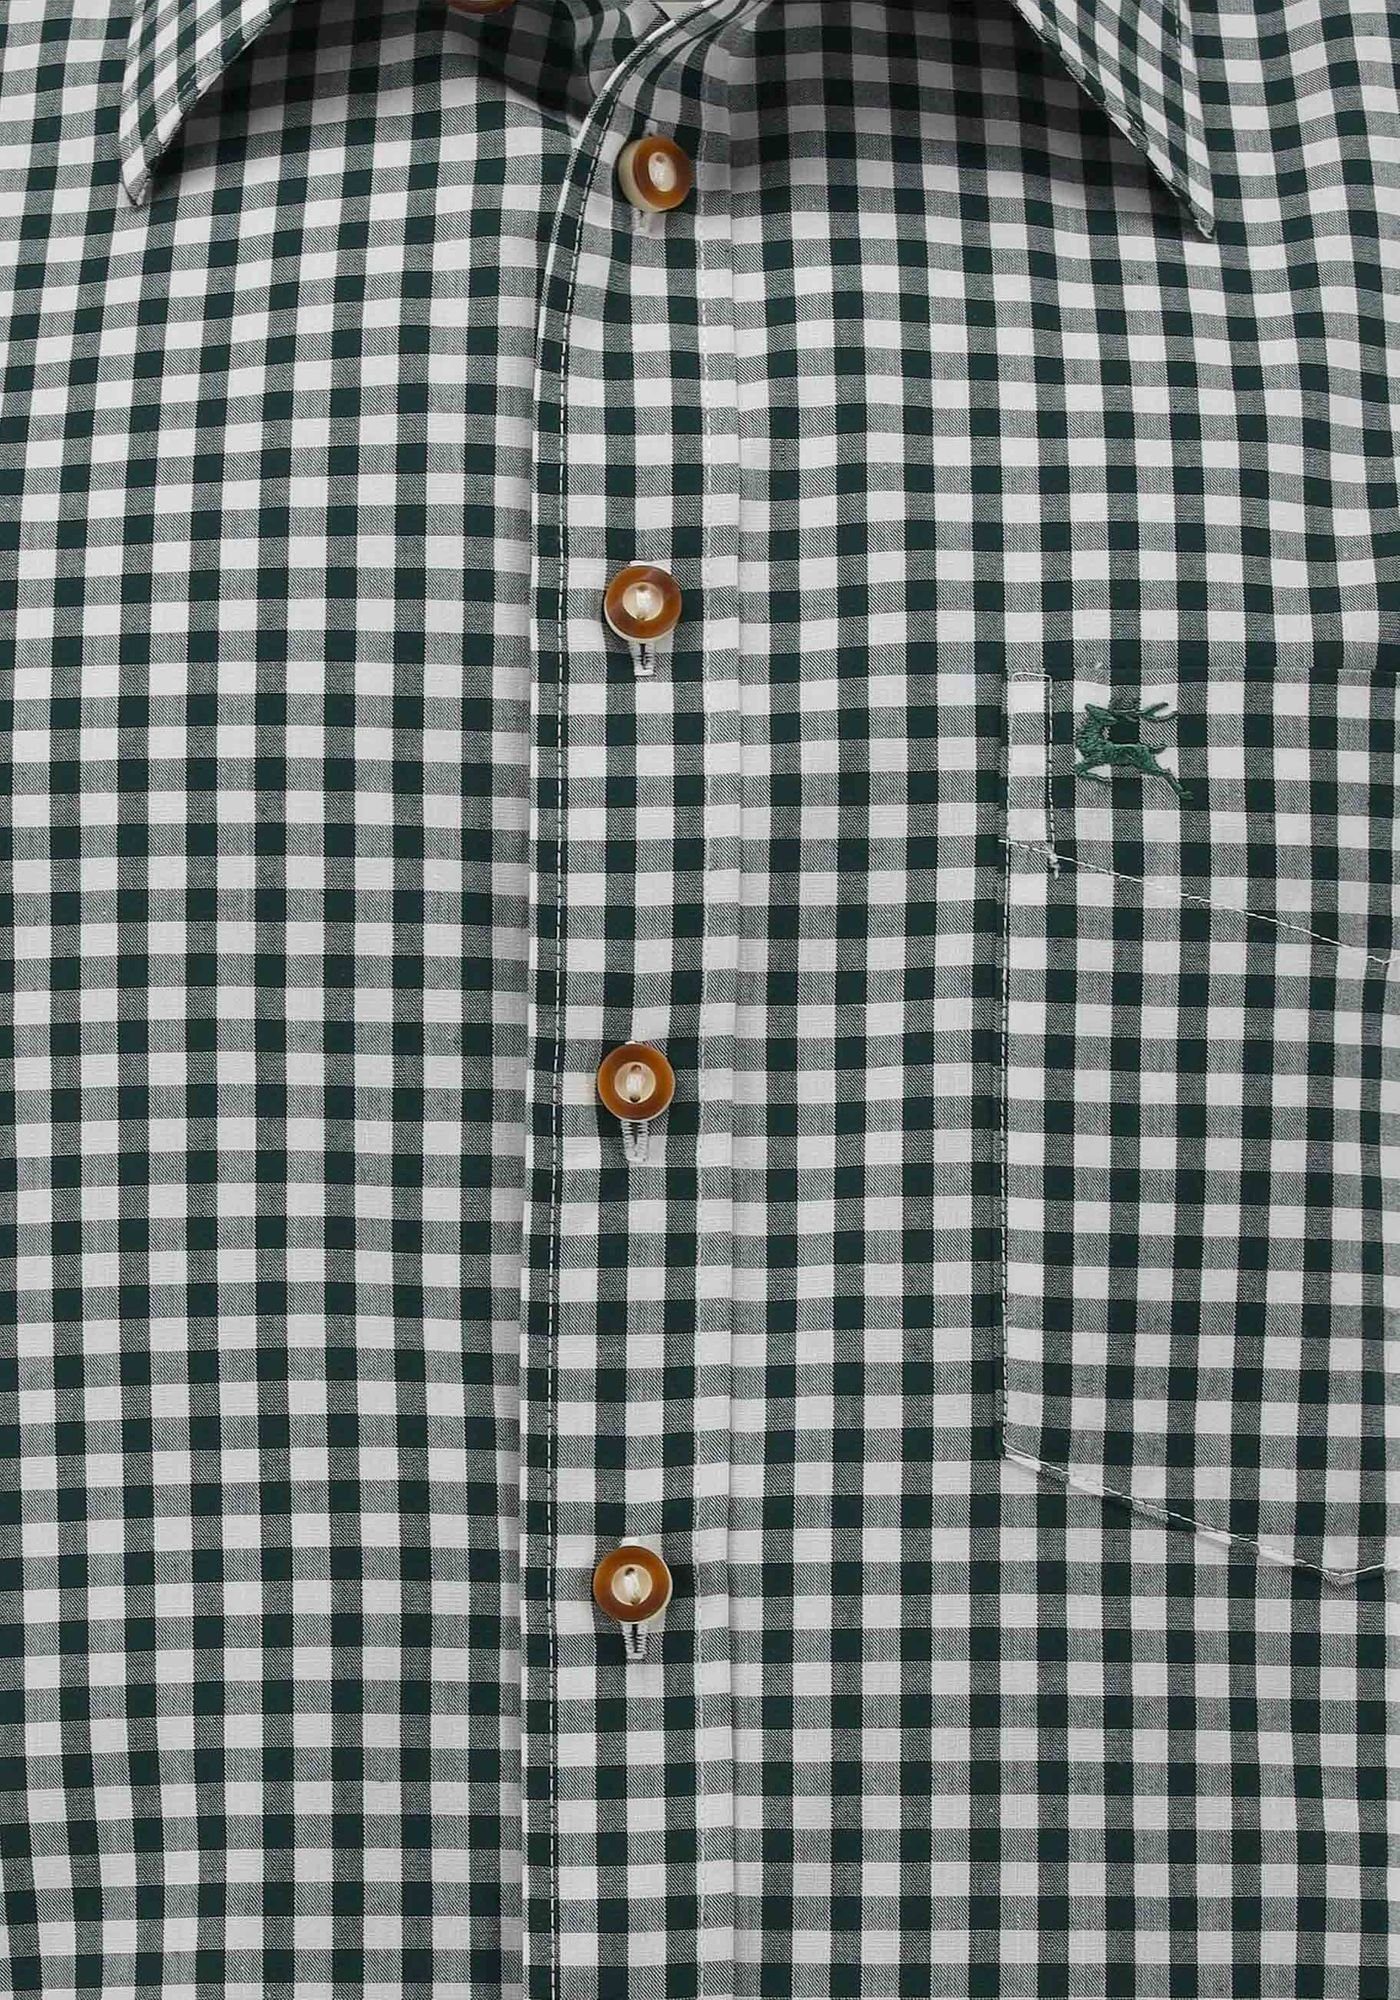 mit dunkelgrün Brusttasche Hirsch-Stickerei Kurzarmhemd mit aufgesetzter OS-Trachten Zihul Trachtenhemd